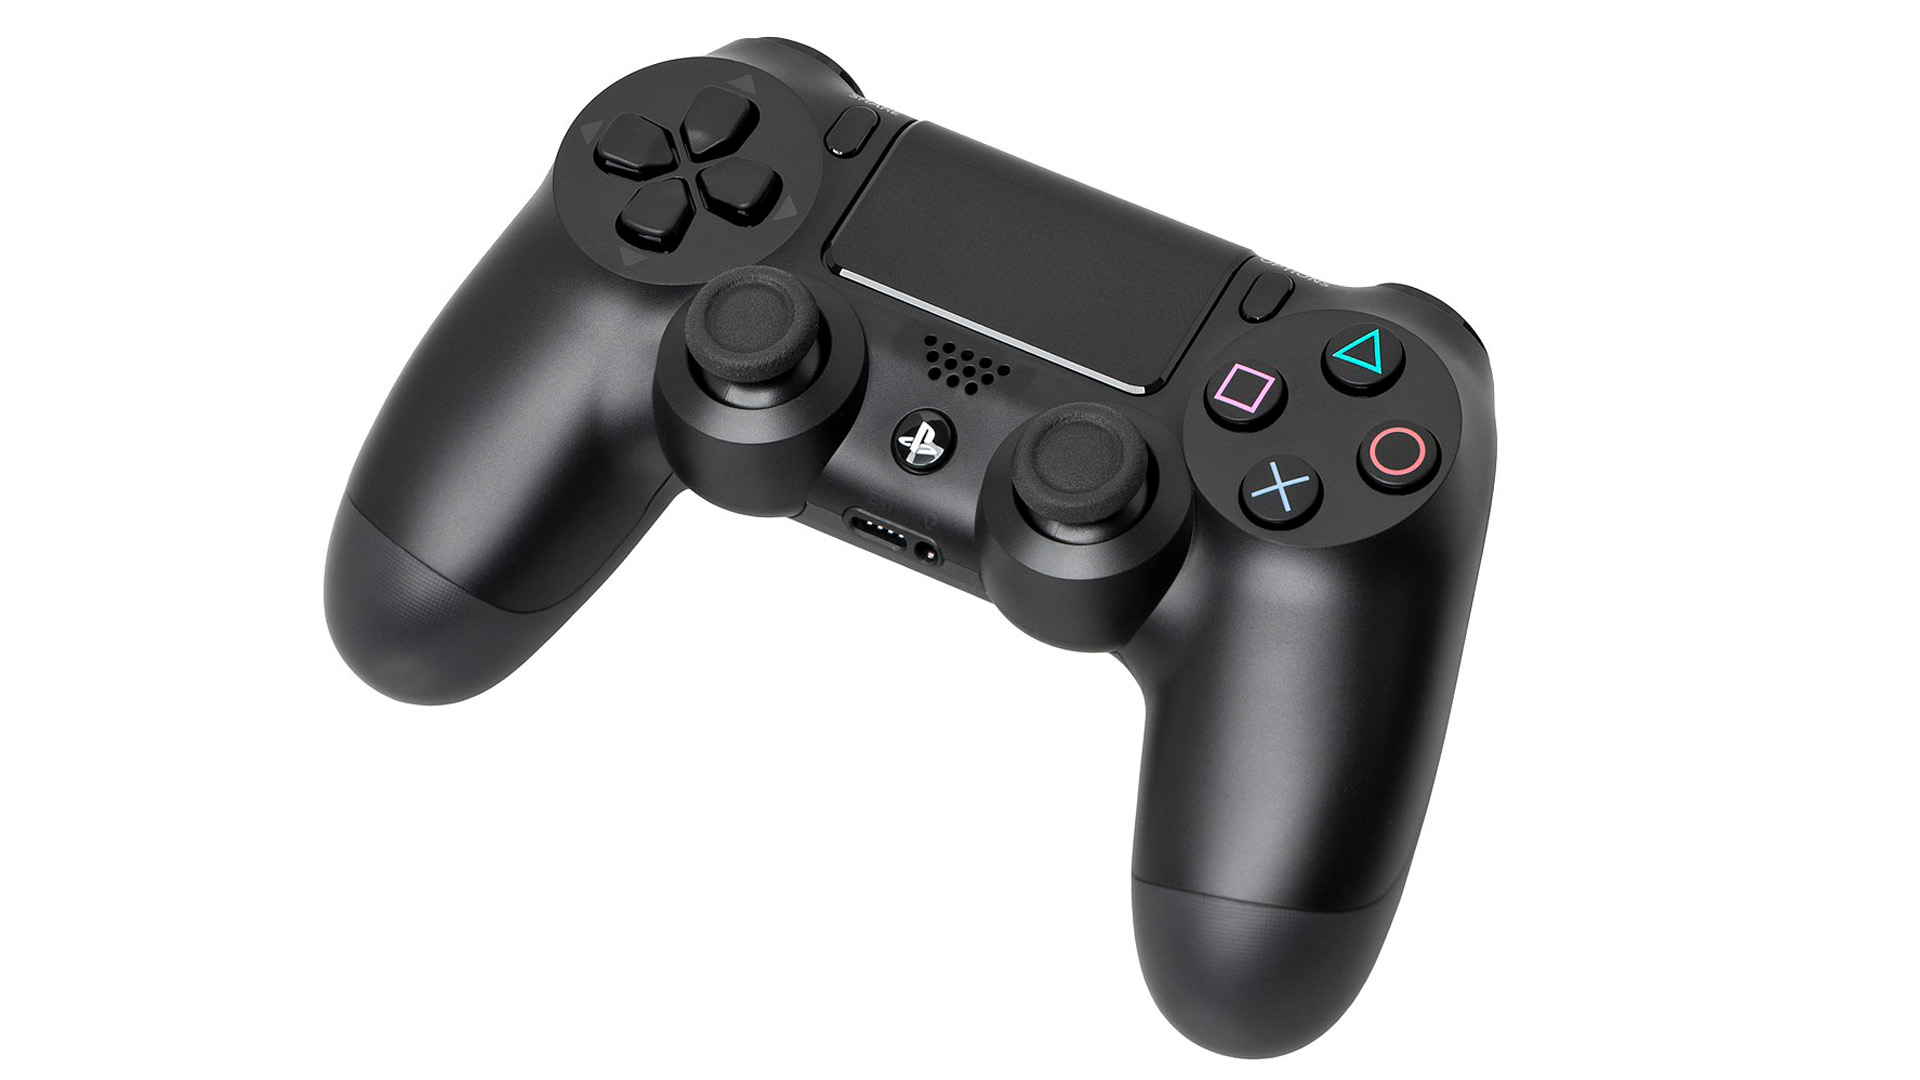 Промо-фото геймпада Dual Shock 4 для PS4. 10 лет исполнилось PlayStation 4